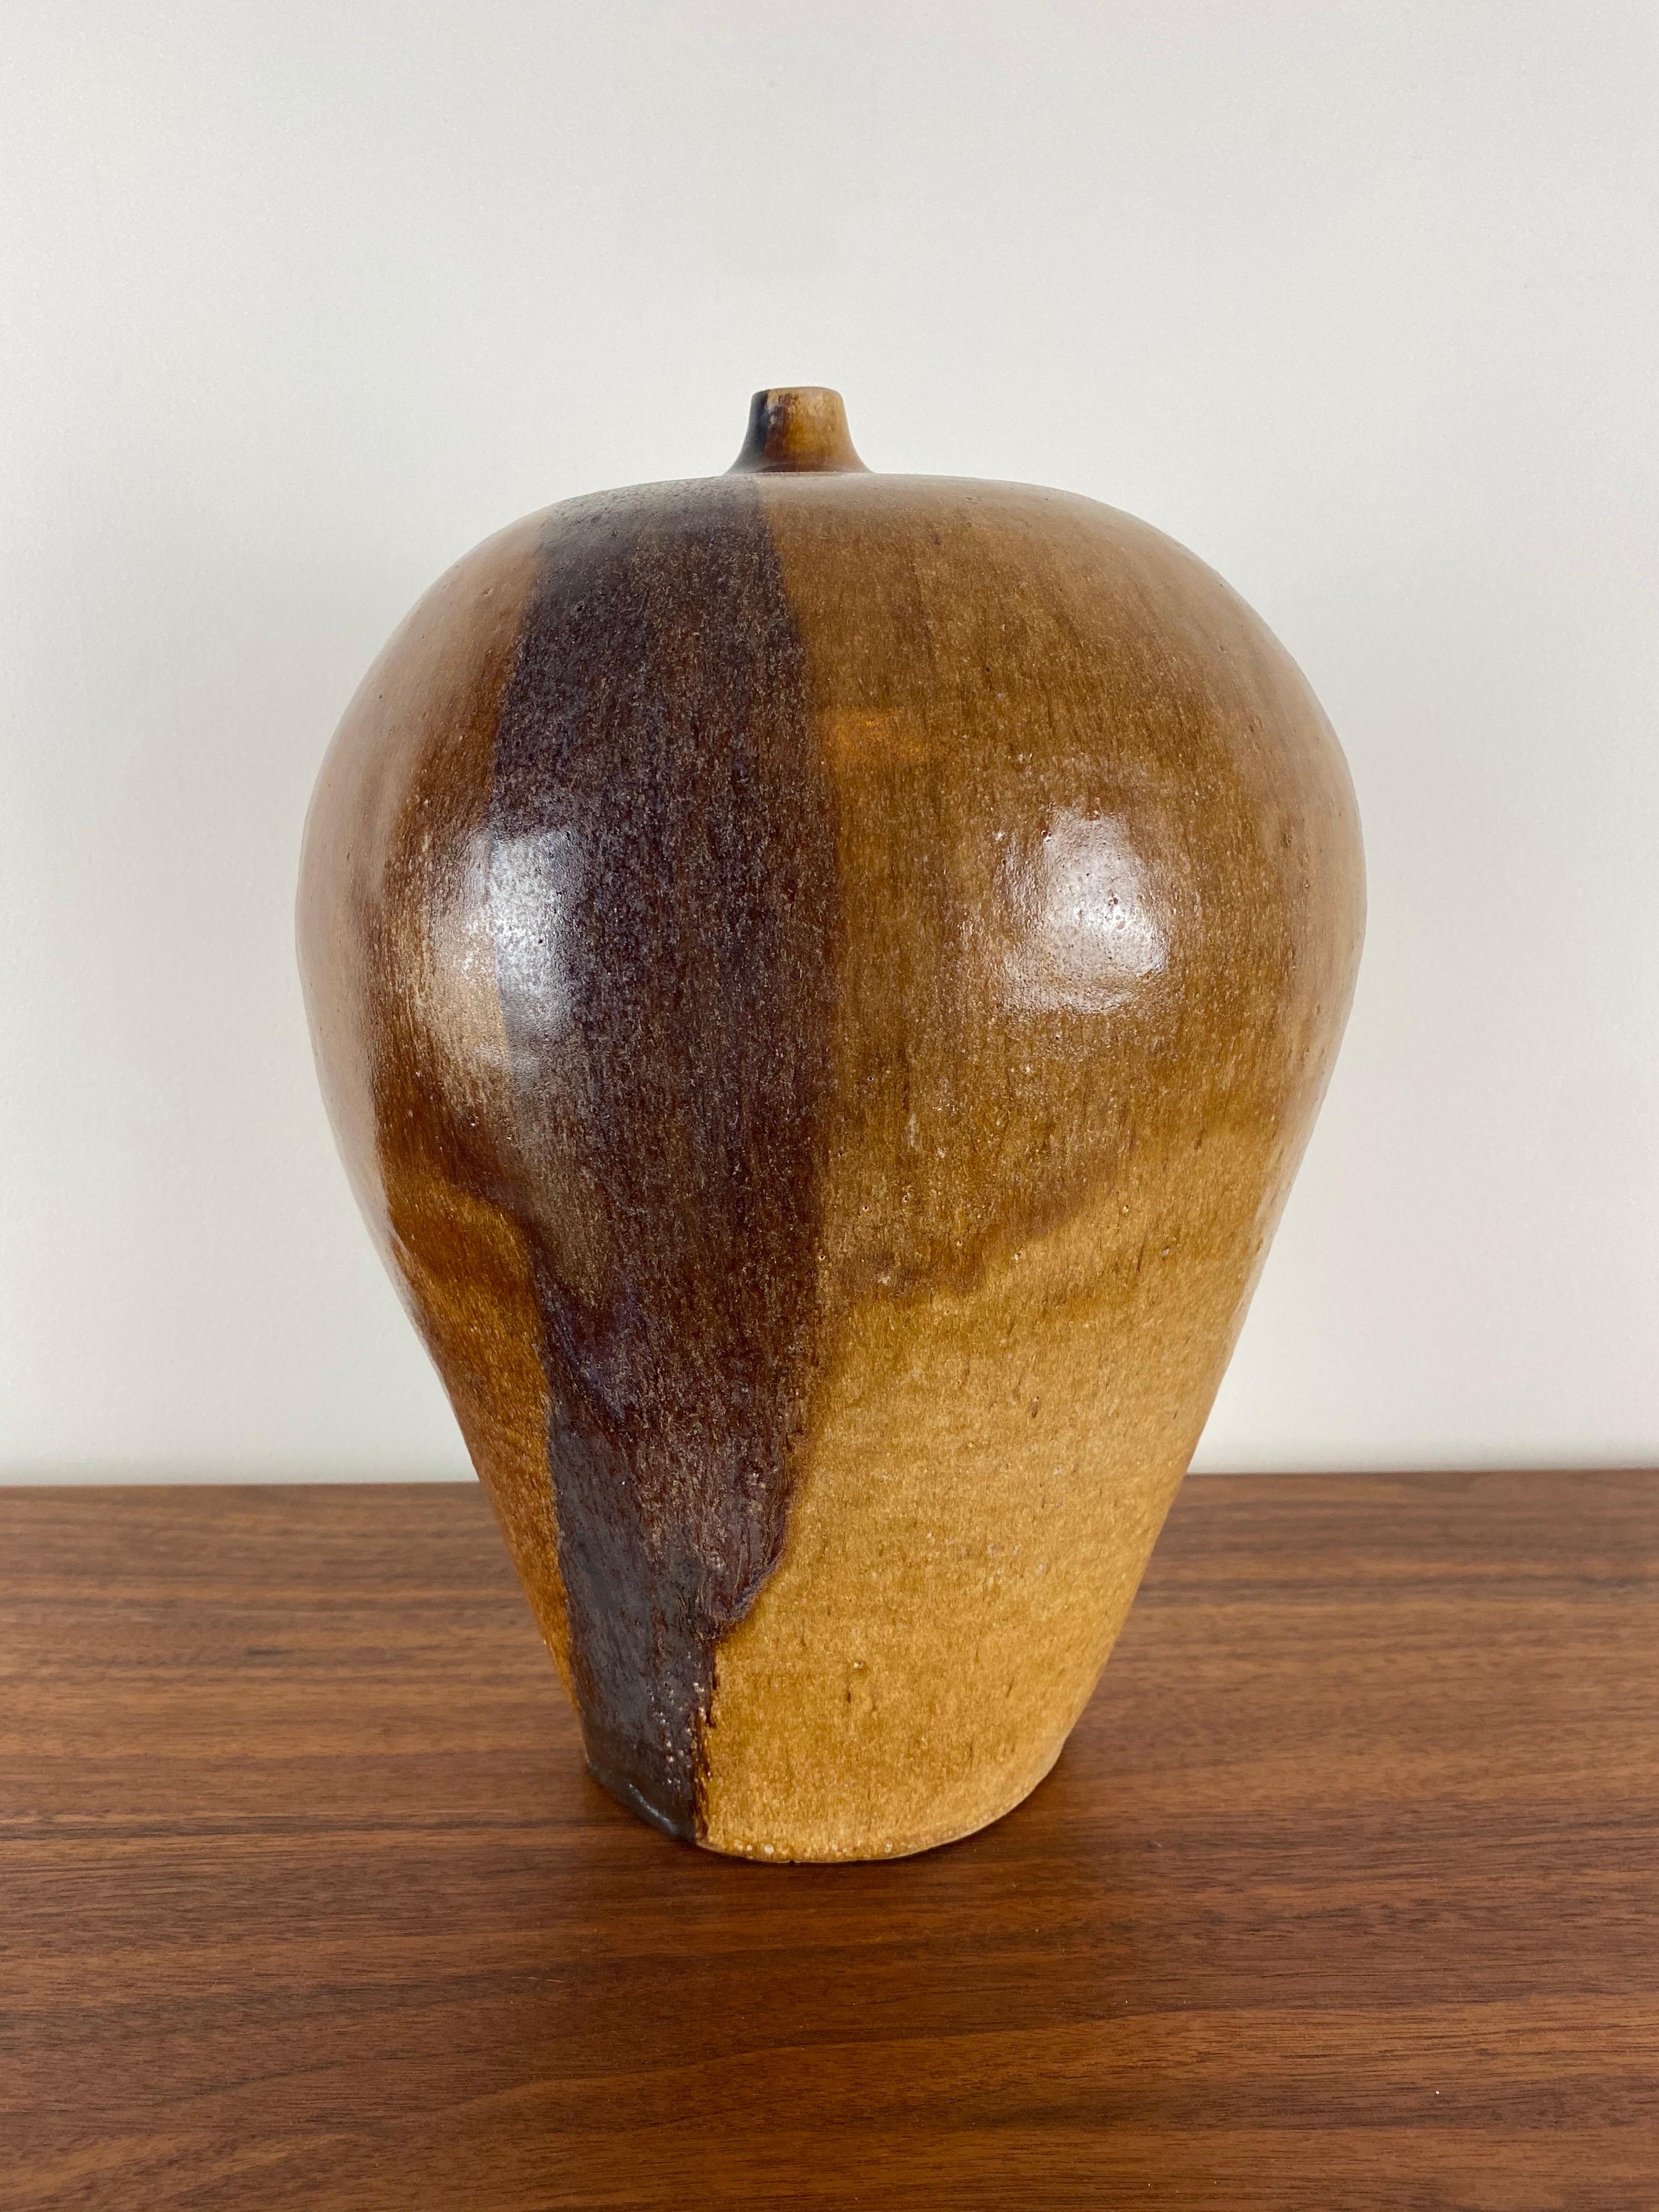 Un glaçage aux tons terreux pour ce grand vase en céramique.

expédition gratuite.